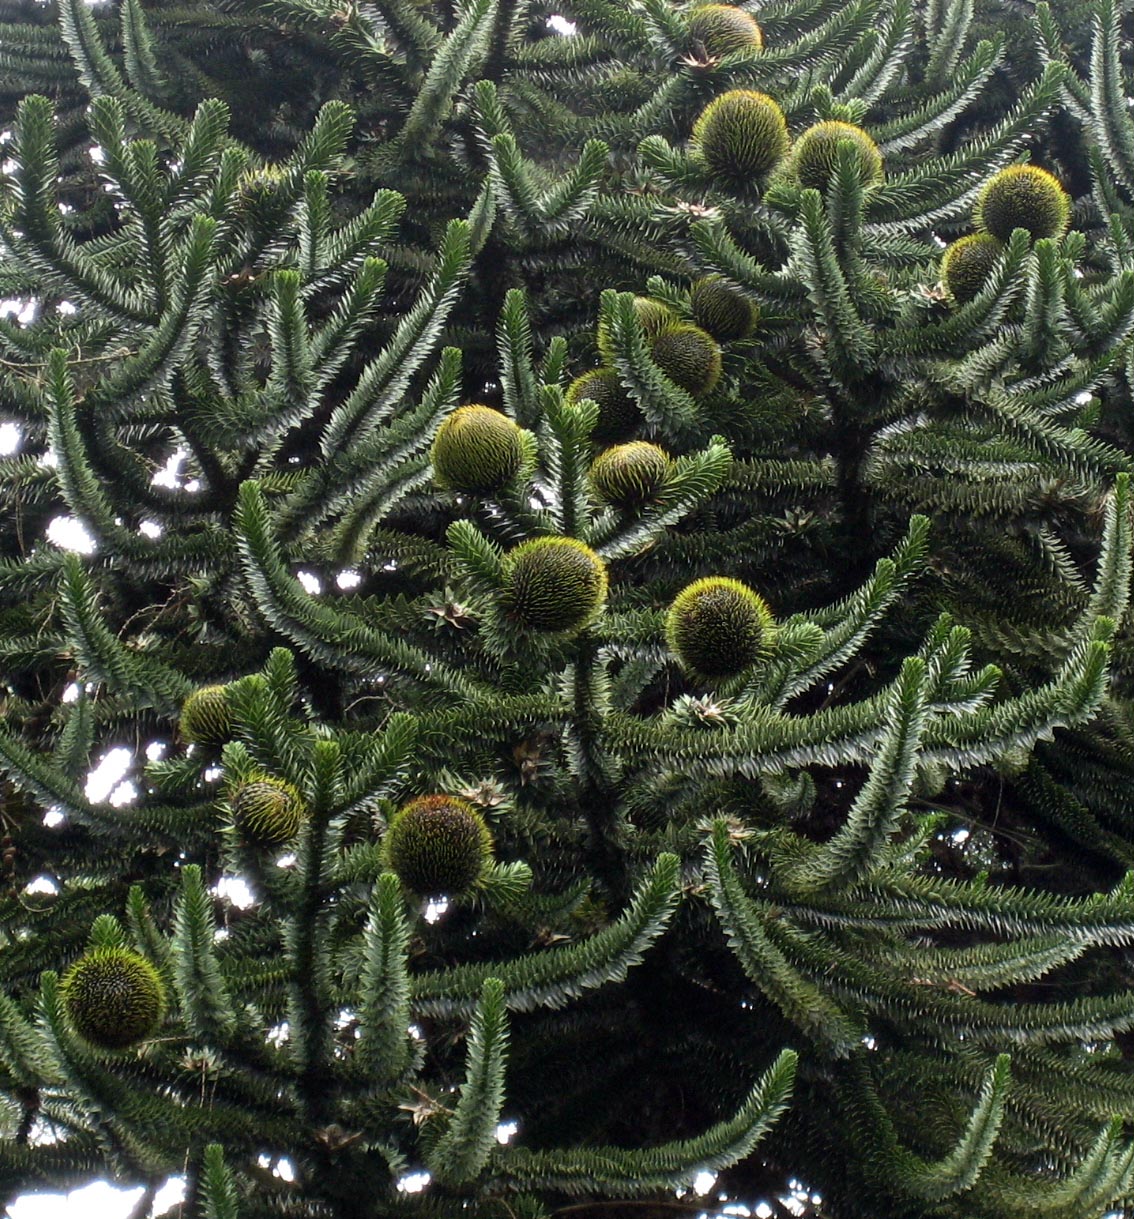 Araucaria araucana with seed cones